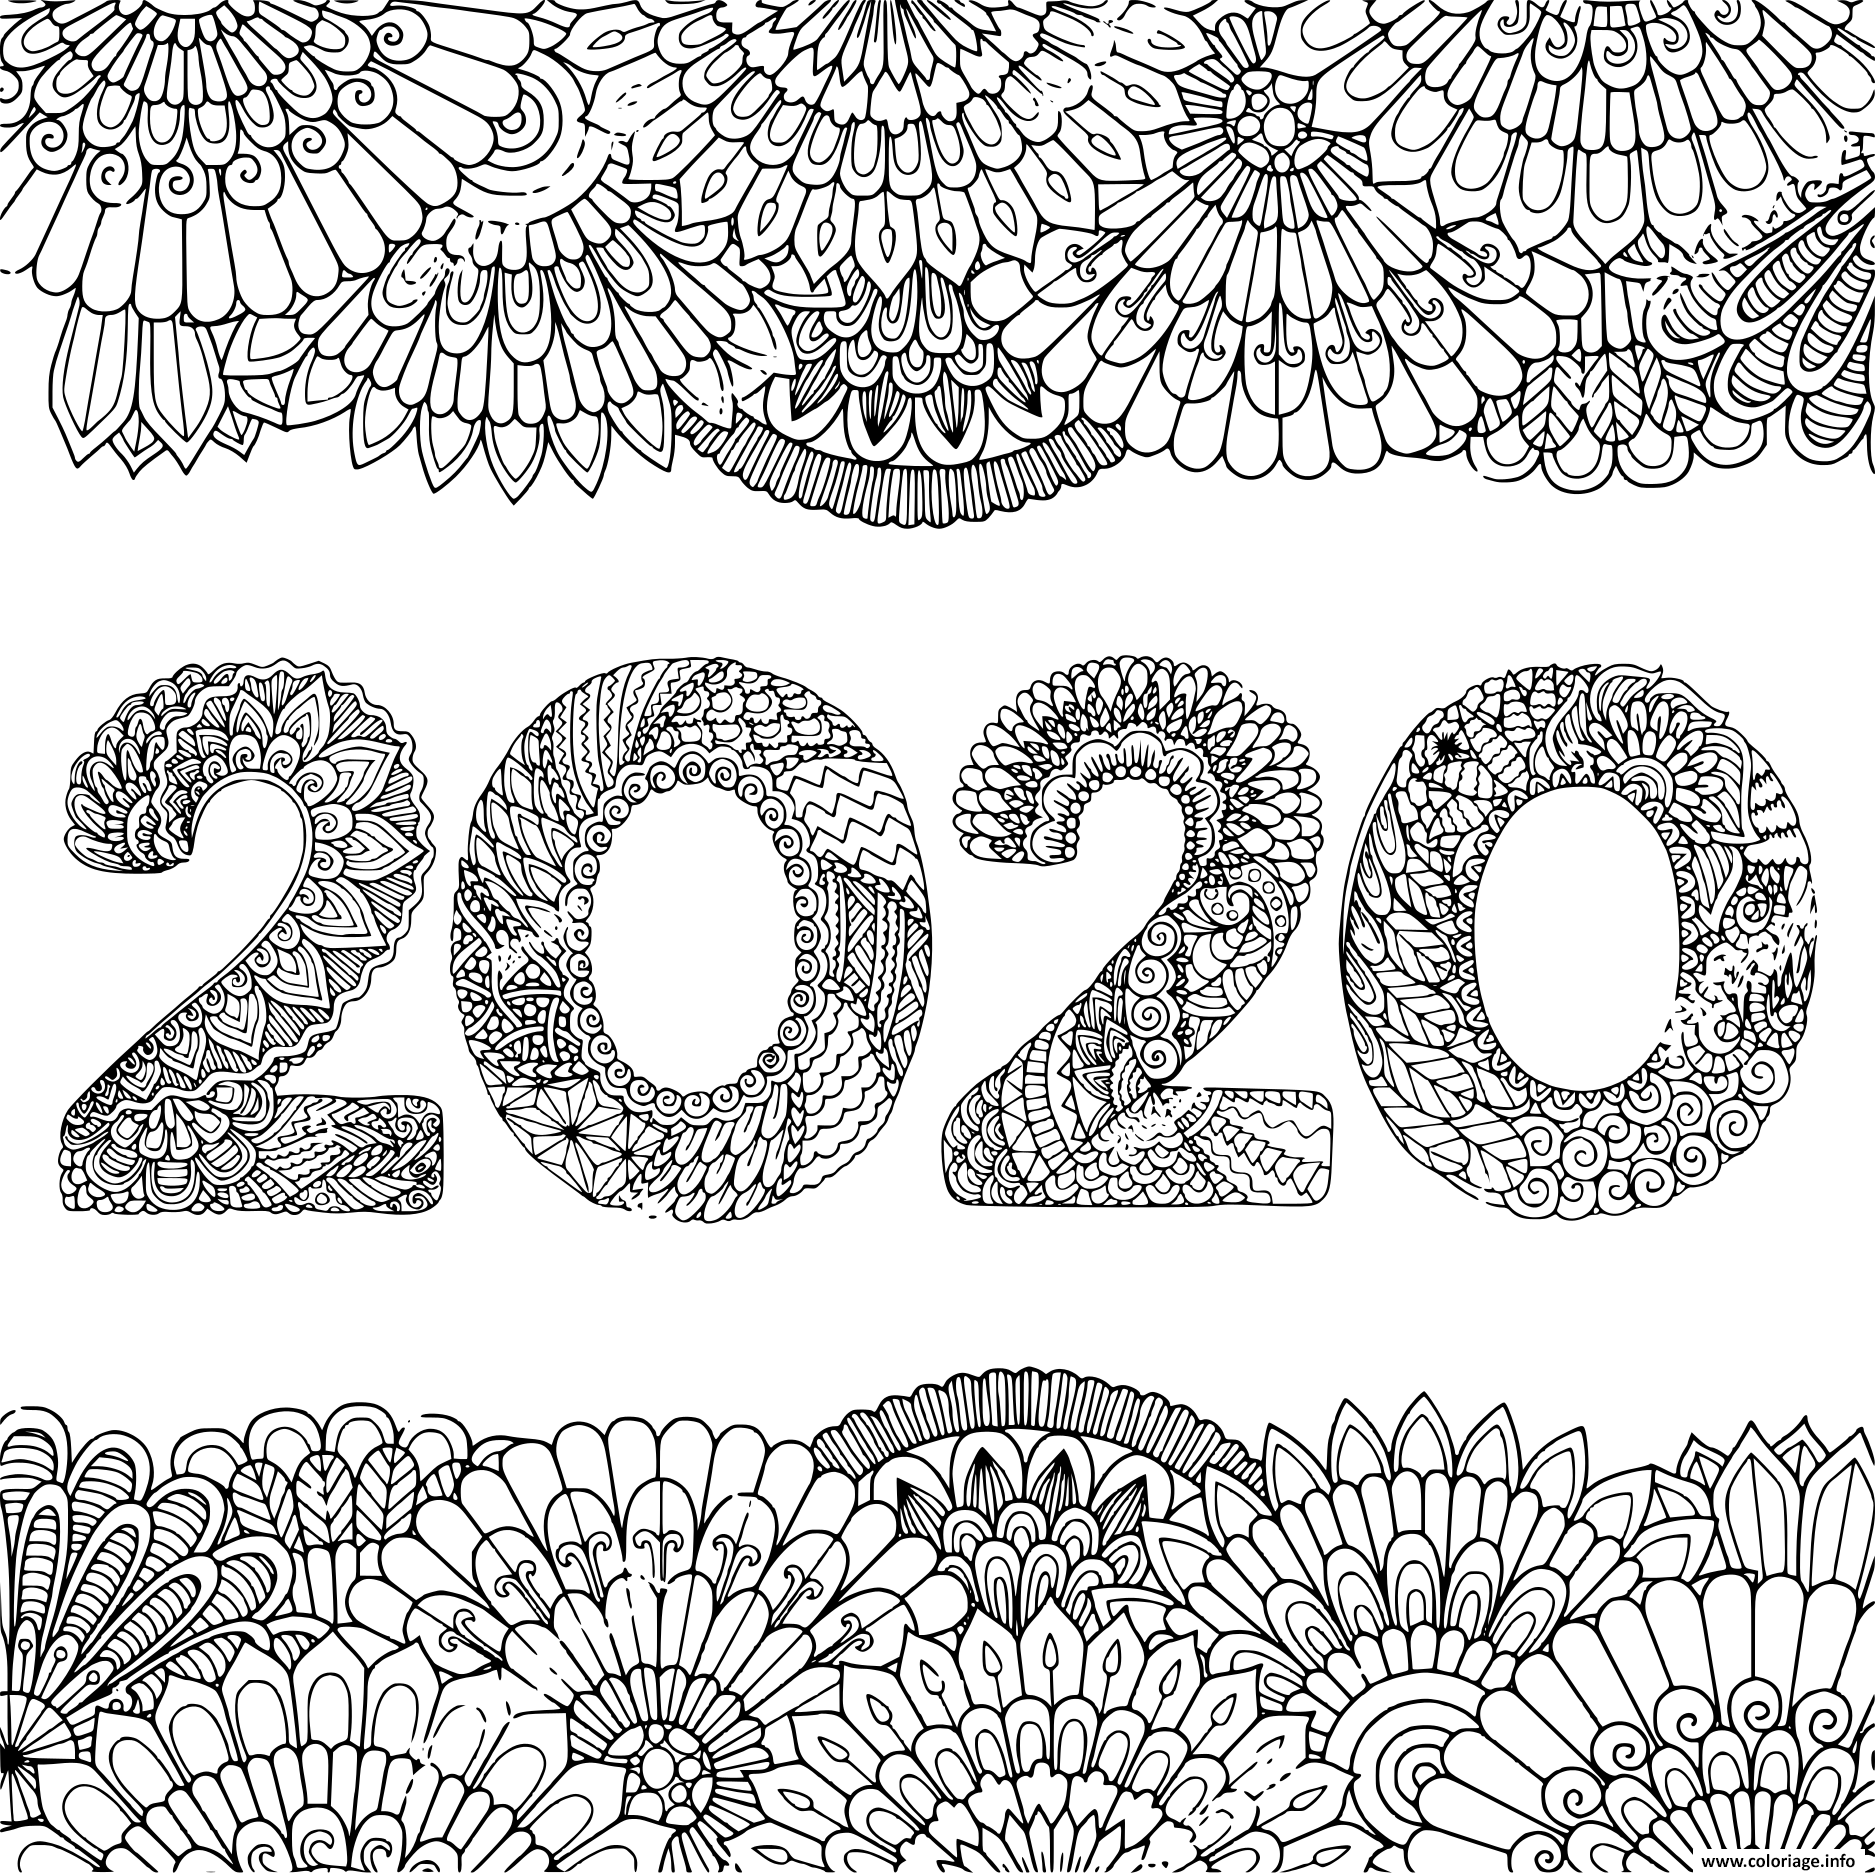 Dessin nouvel an 2020 inside floral frame adult Coloriage Gratuit à Imprimer